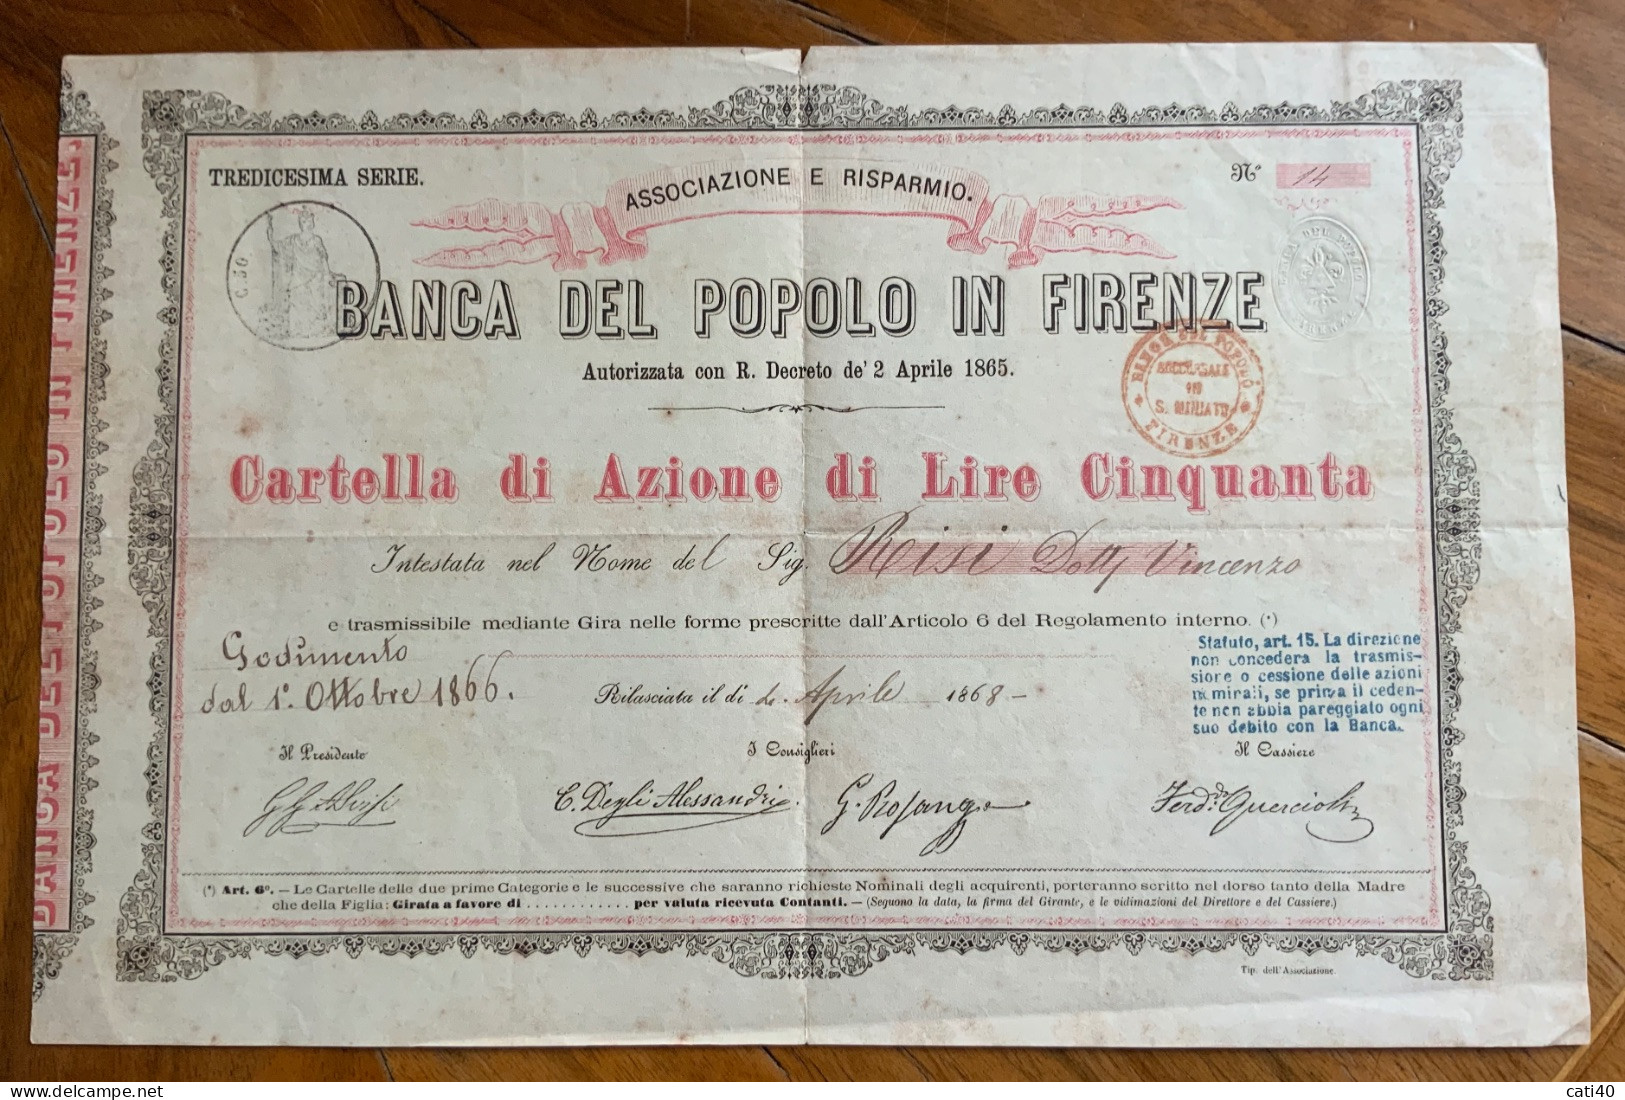 BANCA DEL POPOLO IN FIRENZE - CARTELLA DI AZIONE DA LIRE CINQUANTA - 1866  - TREDICESIMA SERIE - Transporte